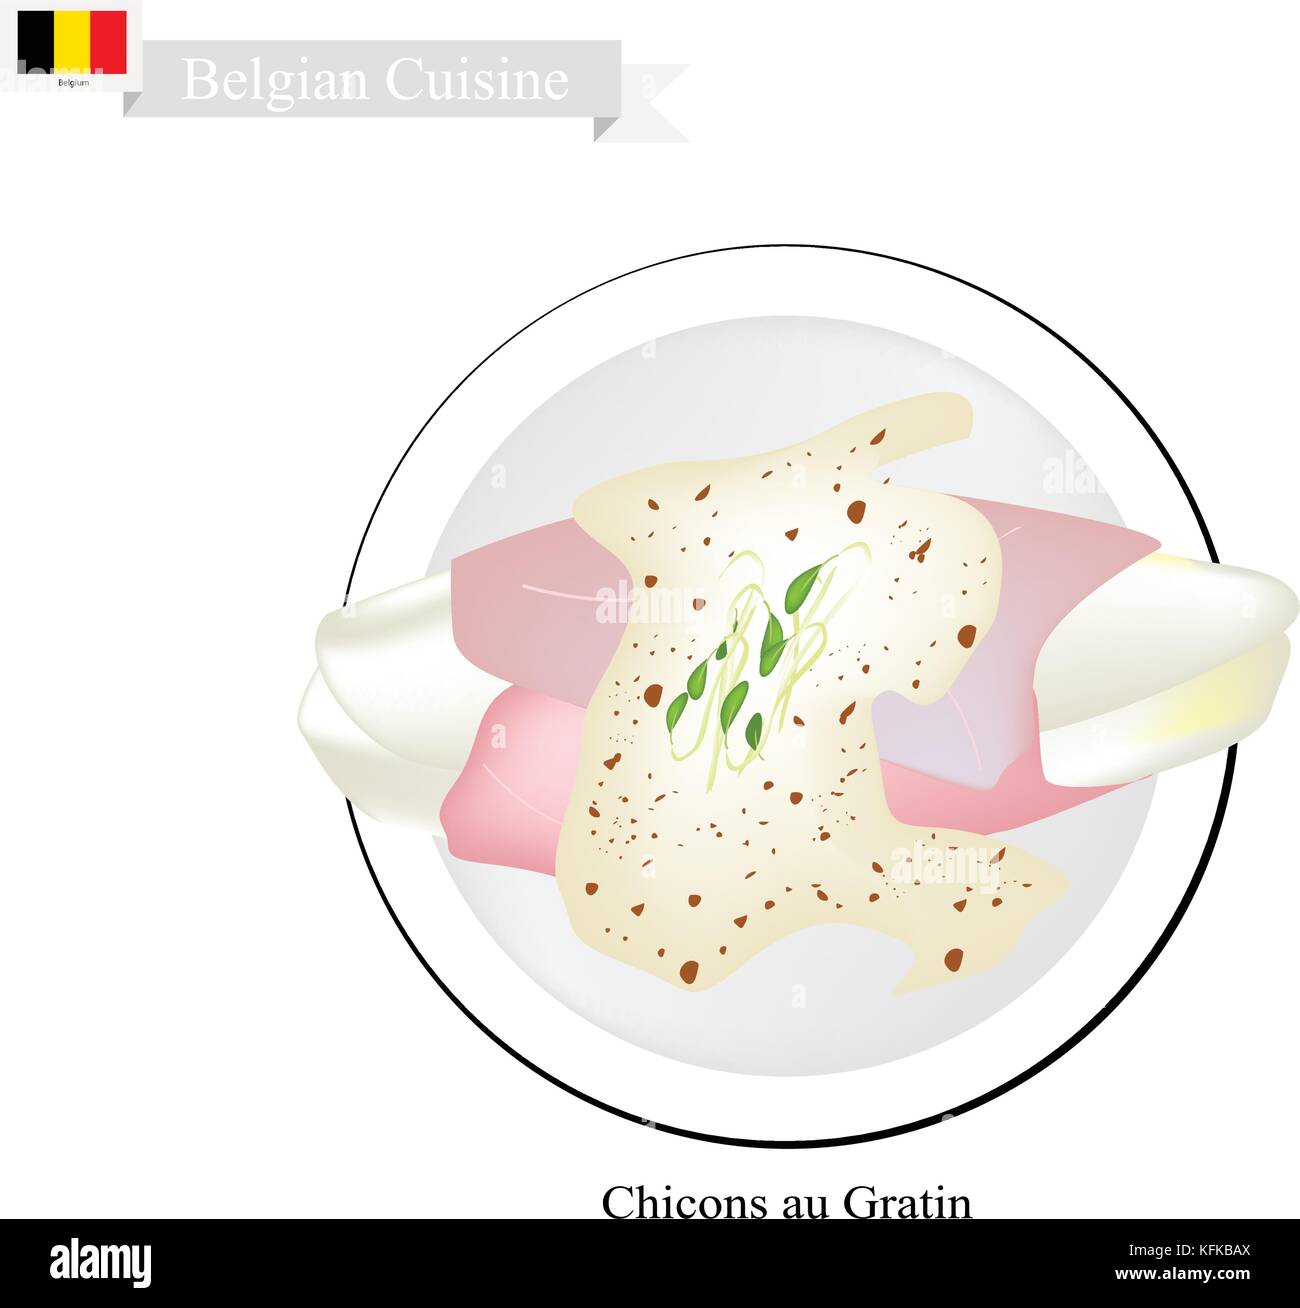 La cuisine belge, illustration de chicons au gratin ou endives traditionnel enveloppé dans du jambon et fromage fondu. garni d'un des plus célèbre plat dans Illustration de Vecteur